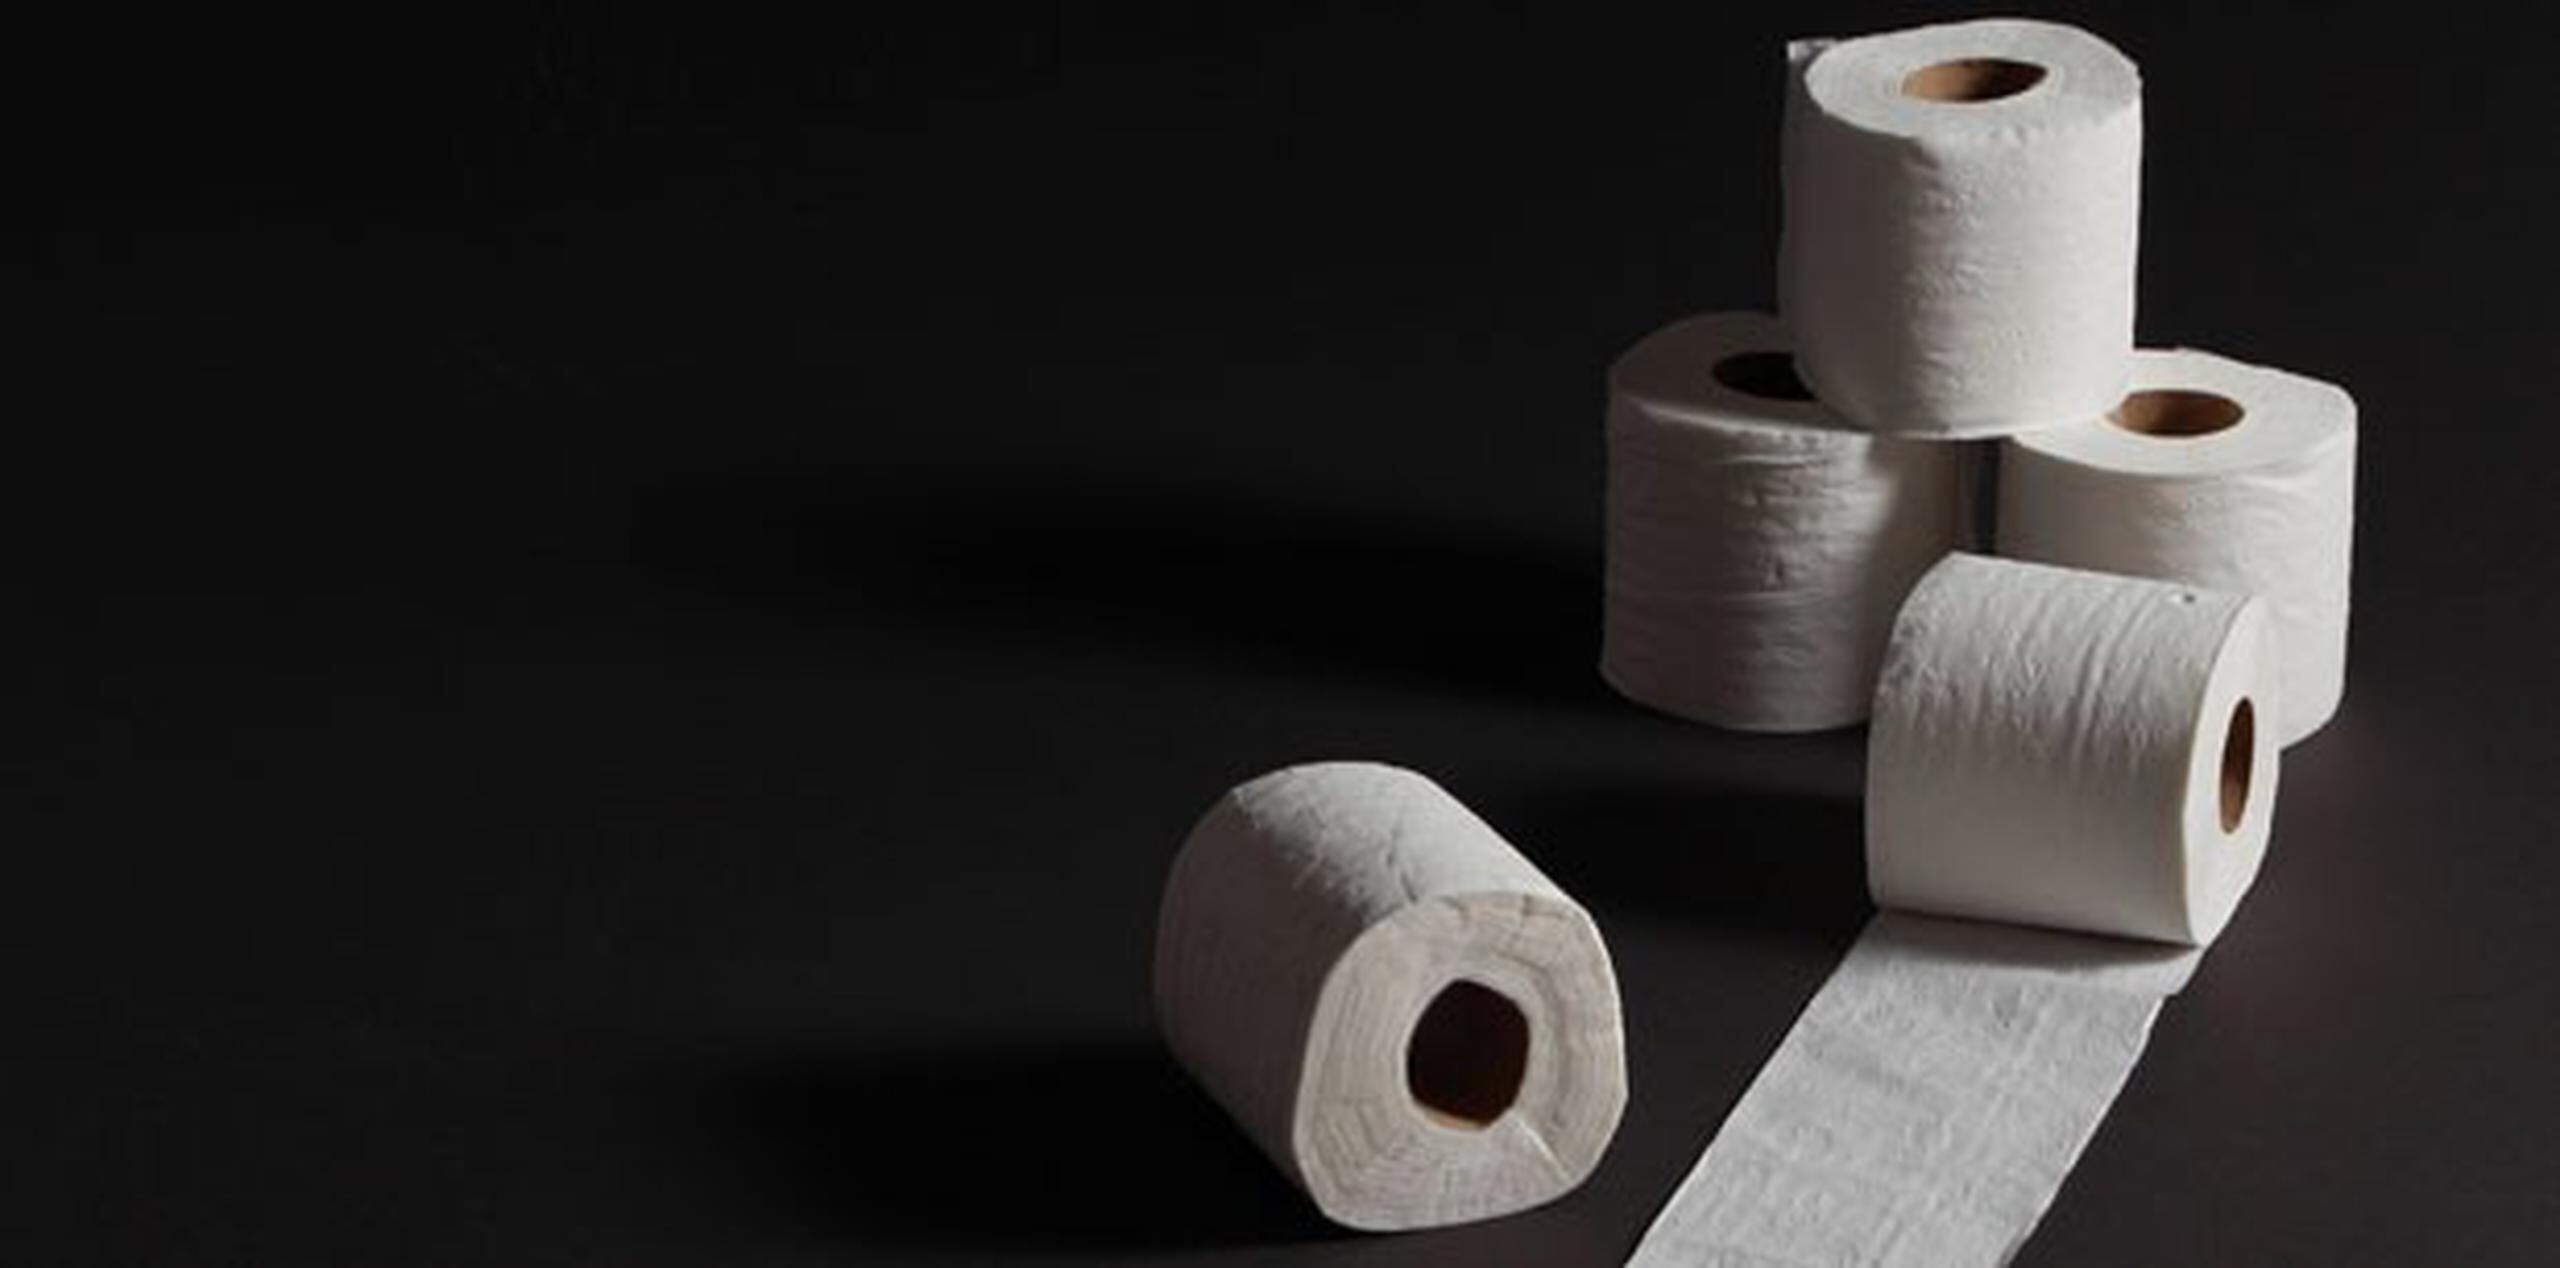 La falta de papel higiénico incluso podría causar más molestias cuando las personas empiecen a usar pañuelos de papel, que no son solubles en agua y podrían obstruir los inodoros. (Archivo)